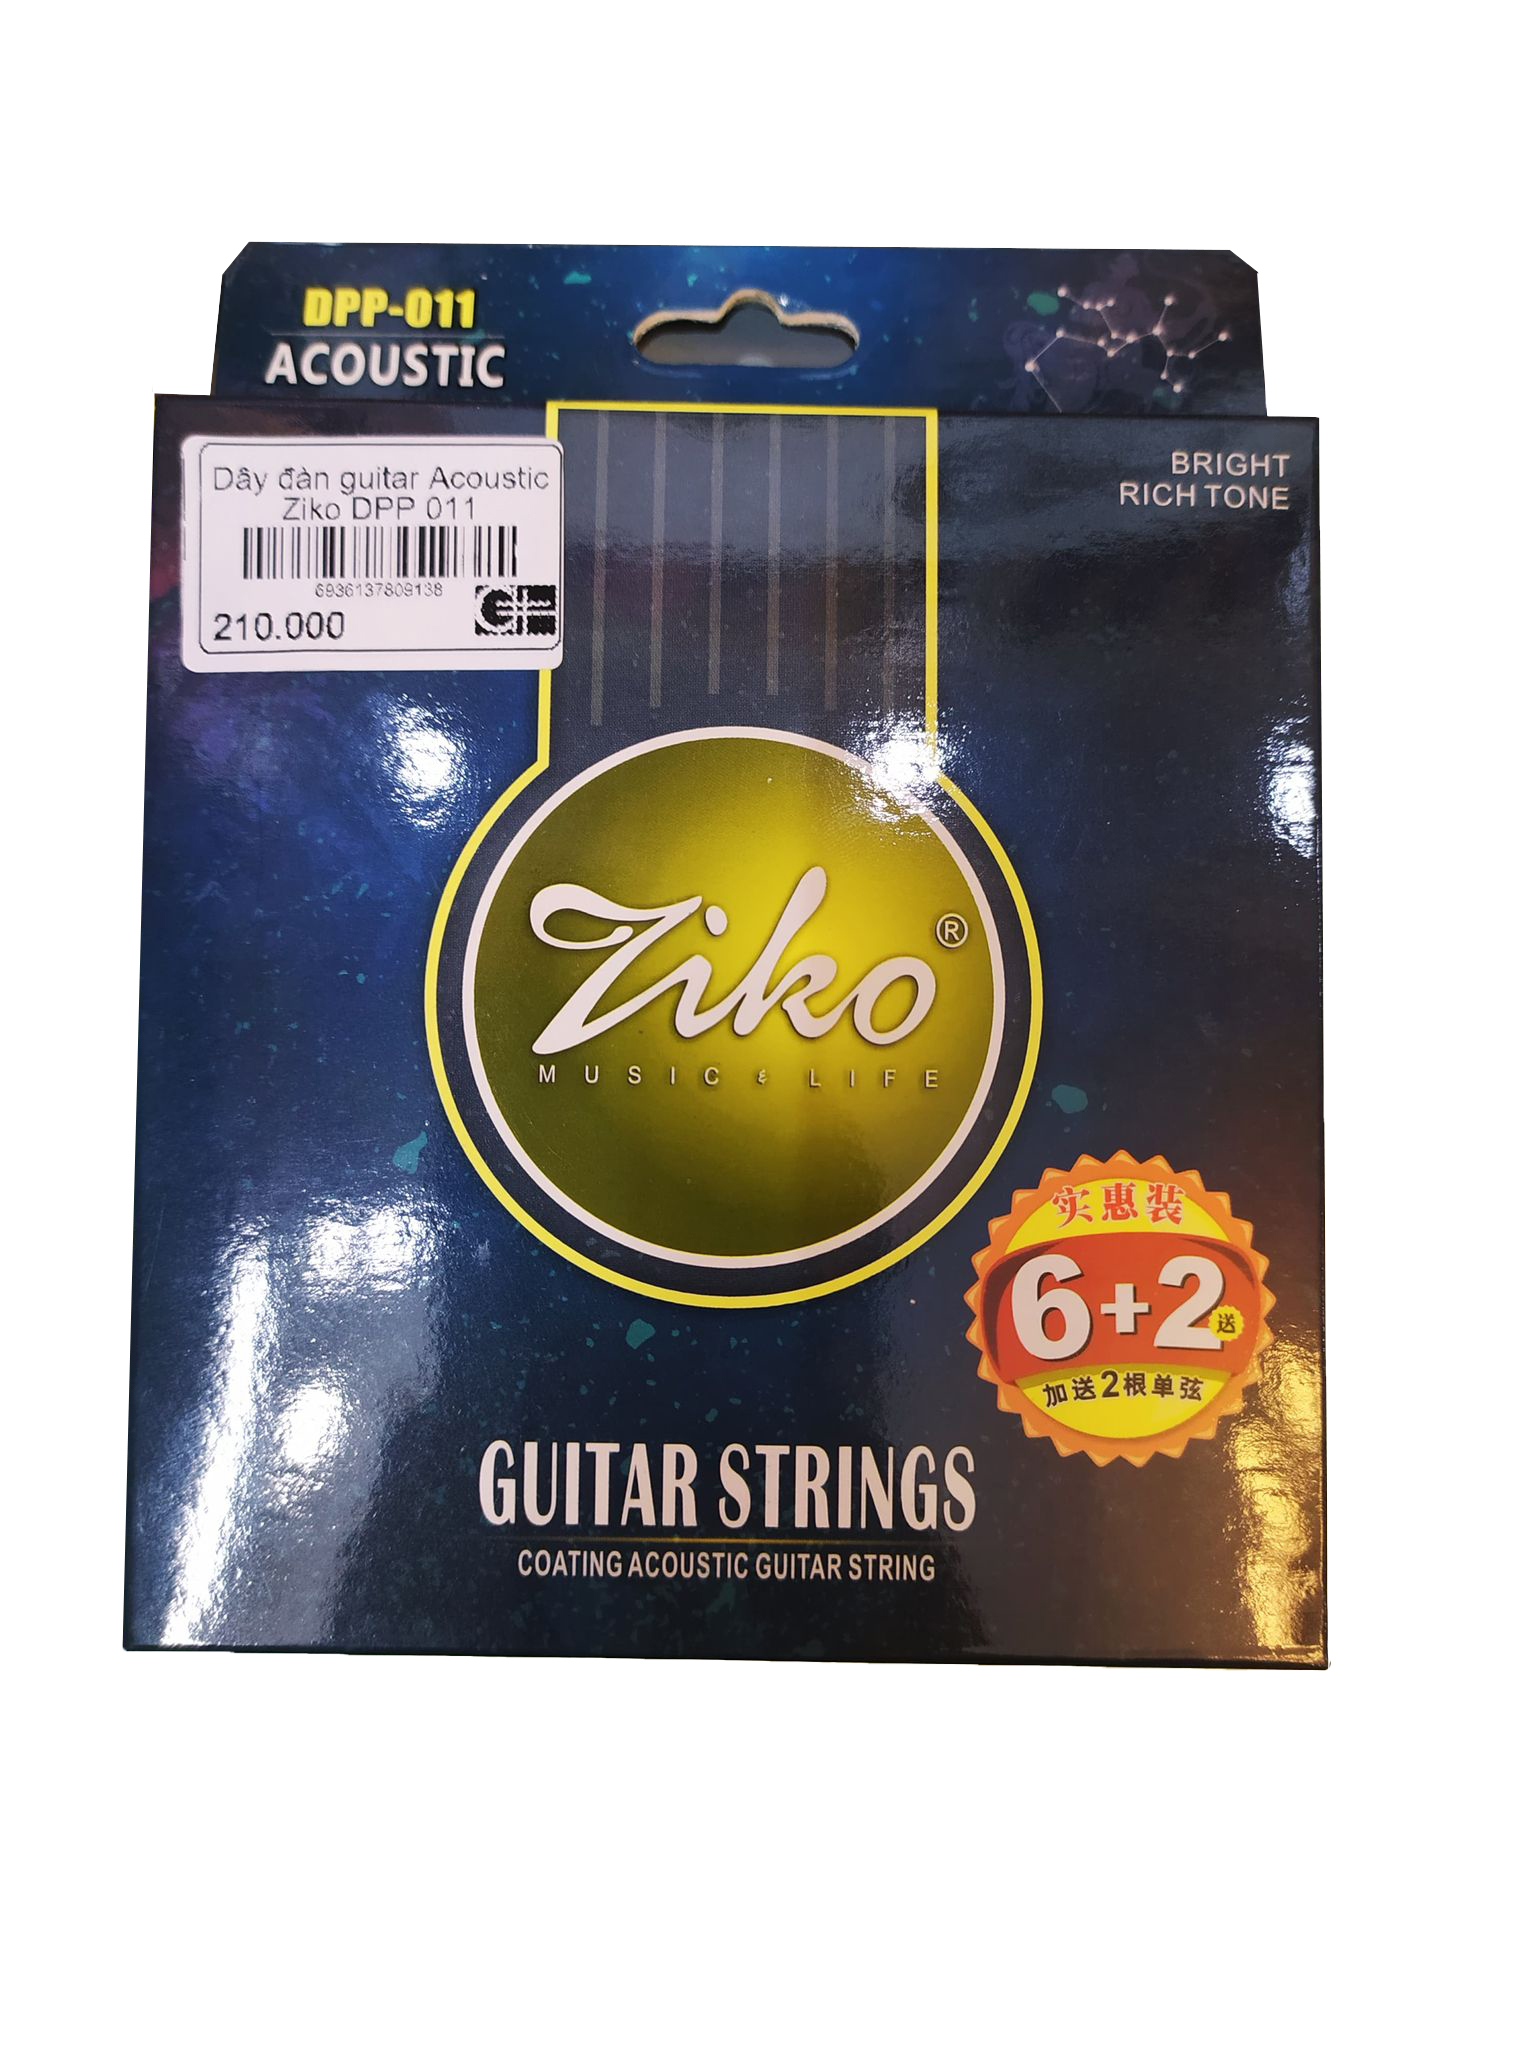 Dây đàn guitar Ziko DPP-011